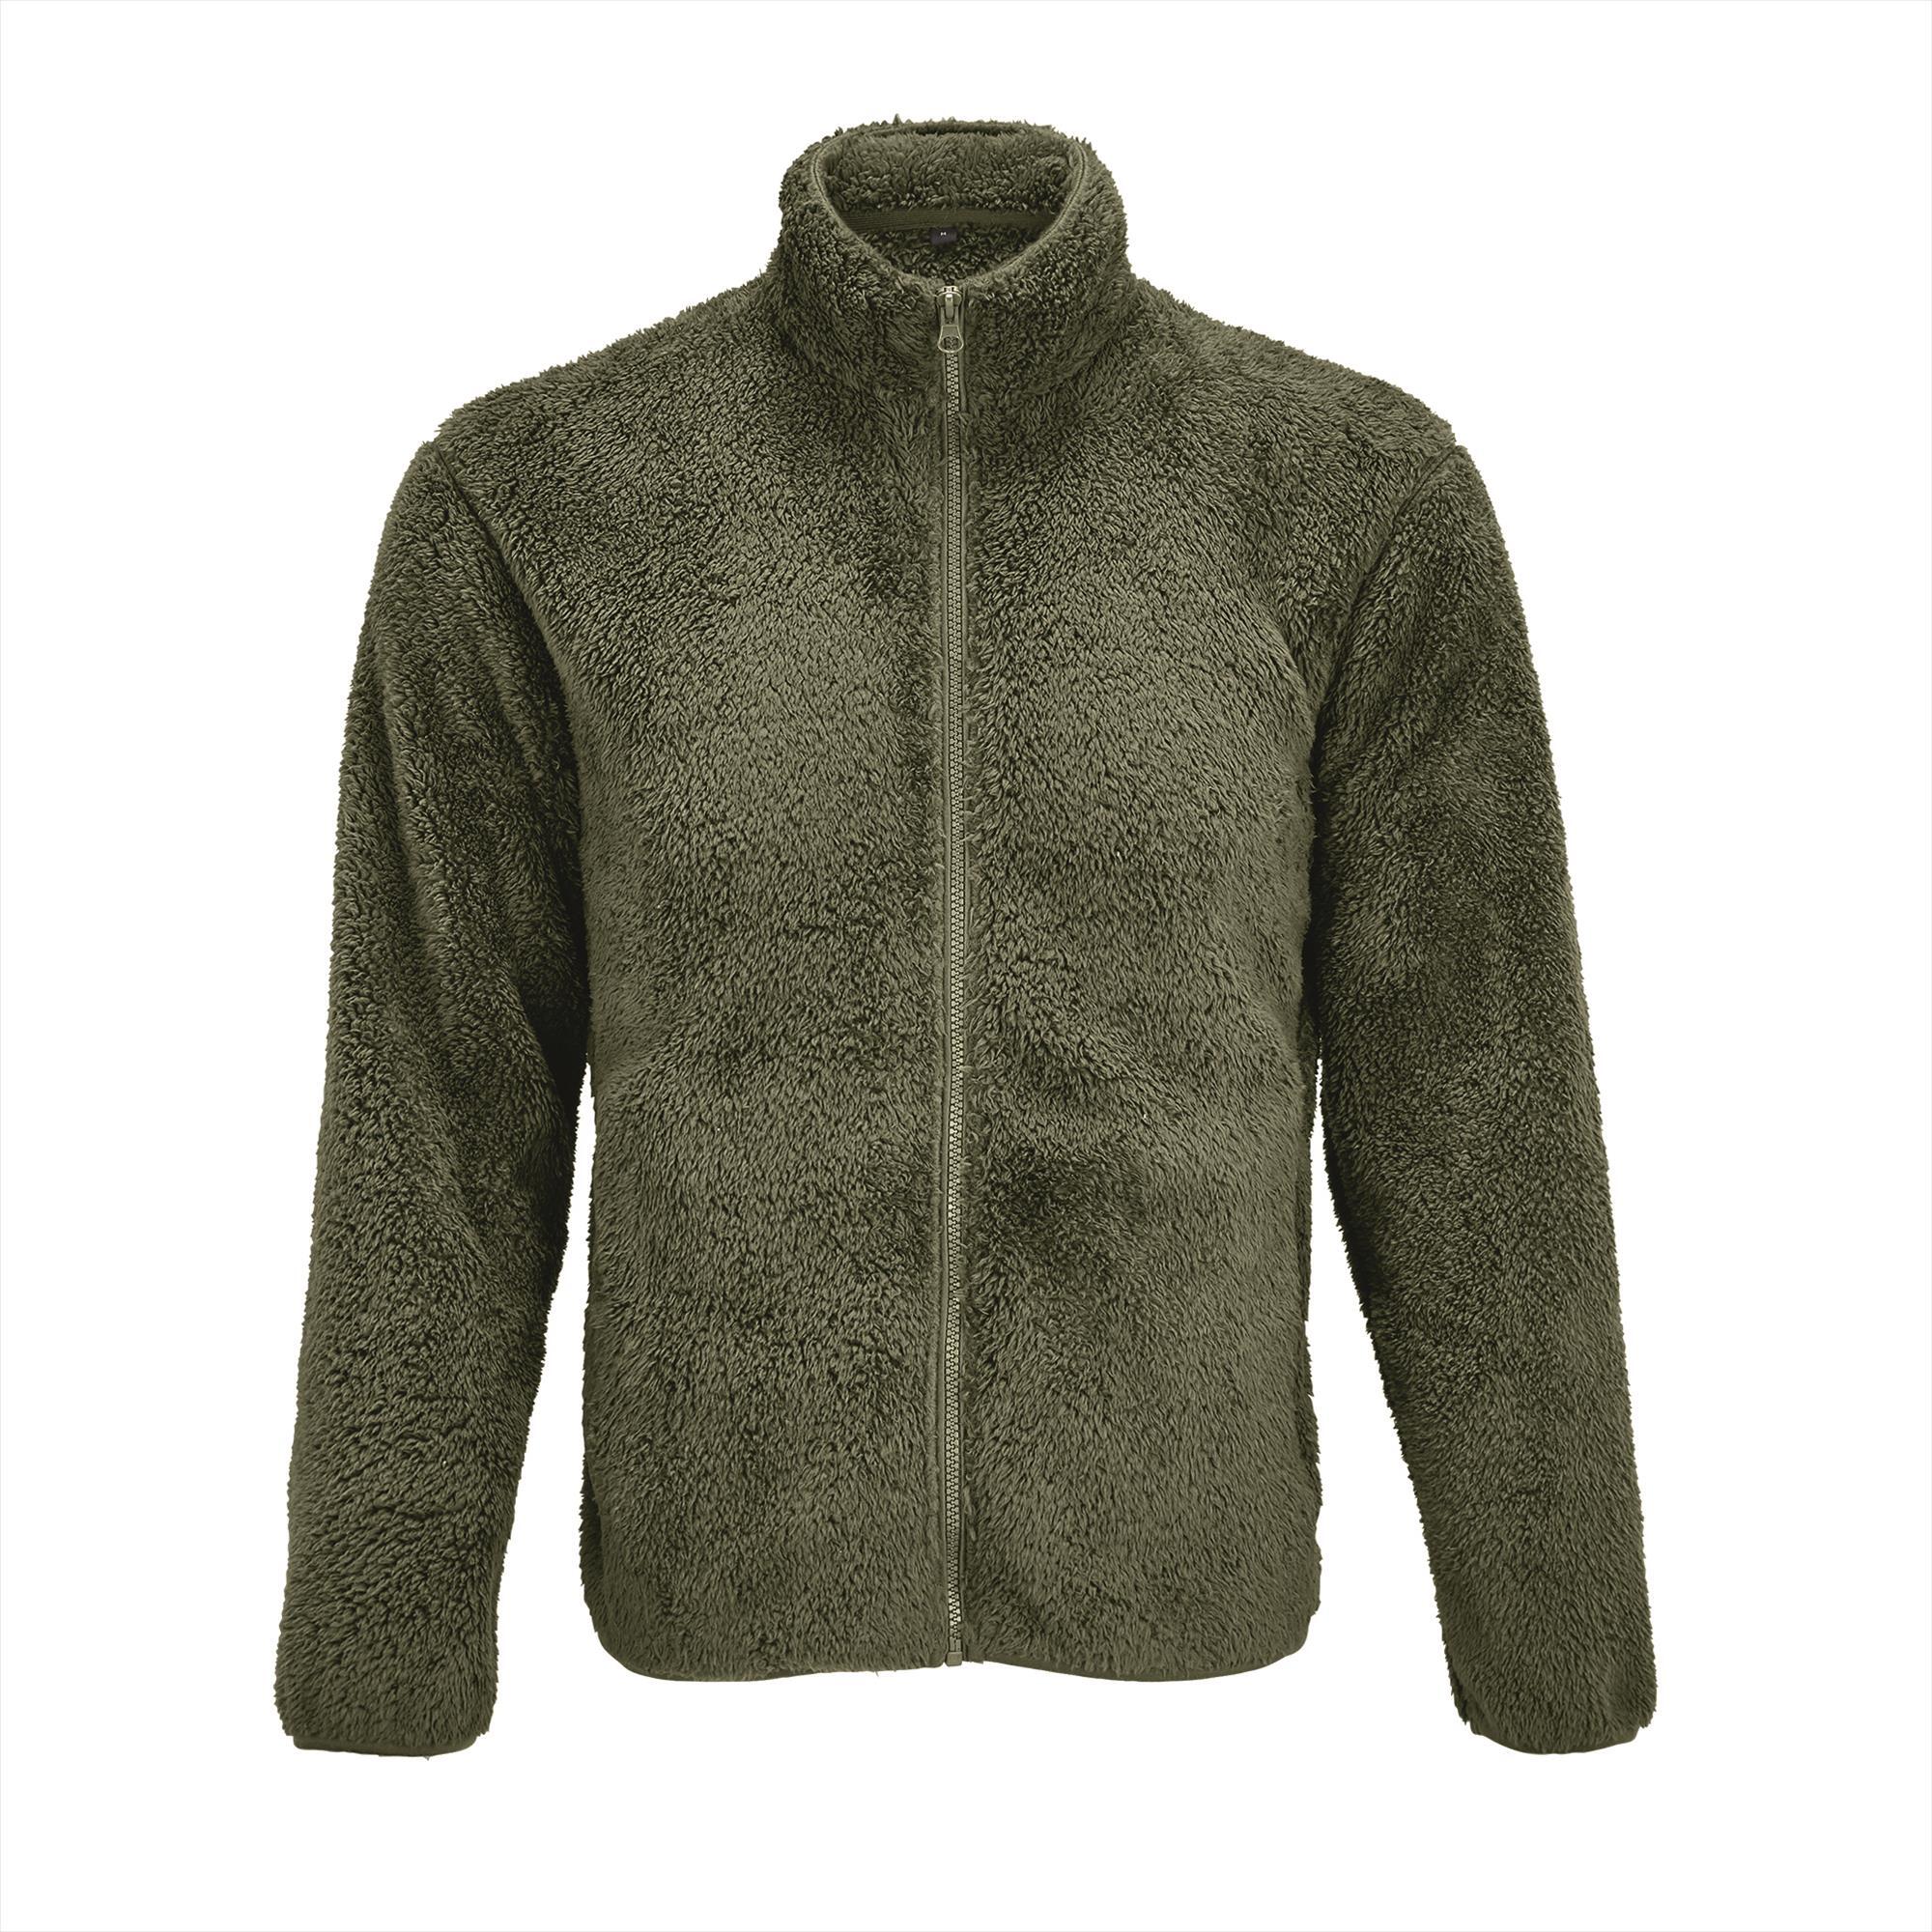 Unisex Fleece Zip Jacket leger groen jas